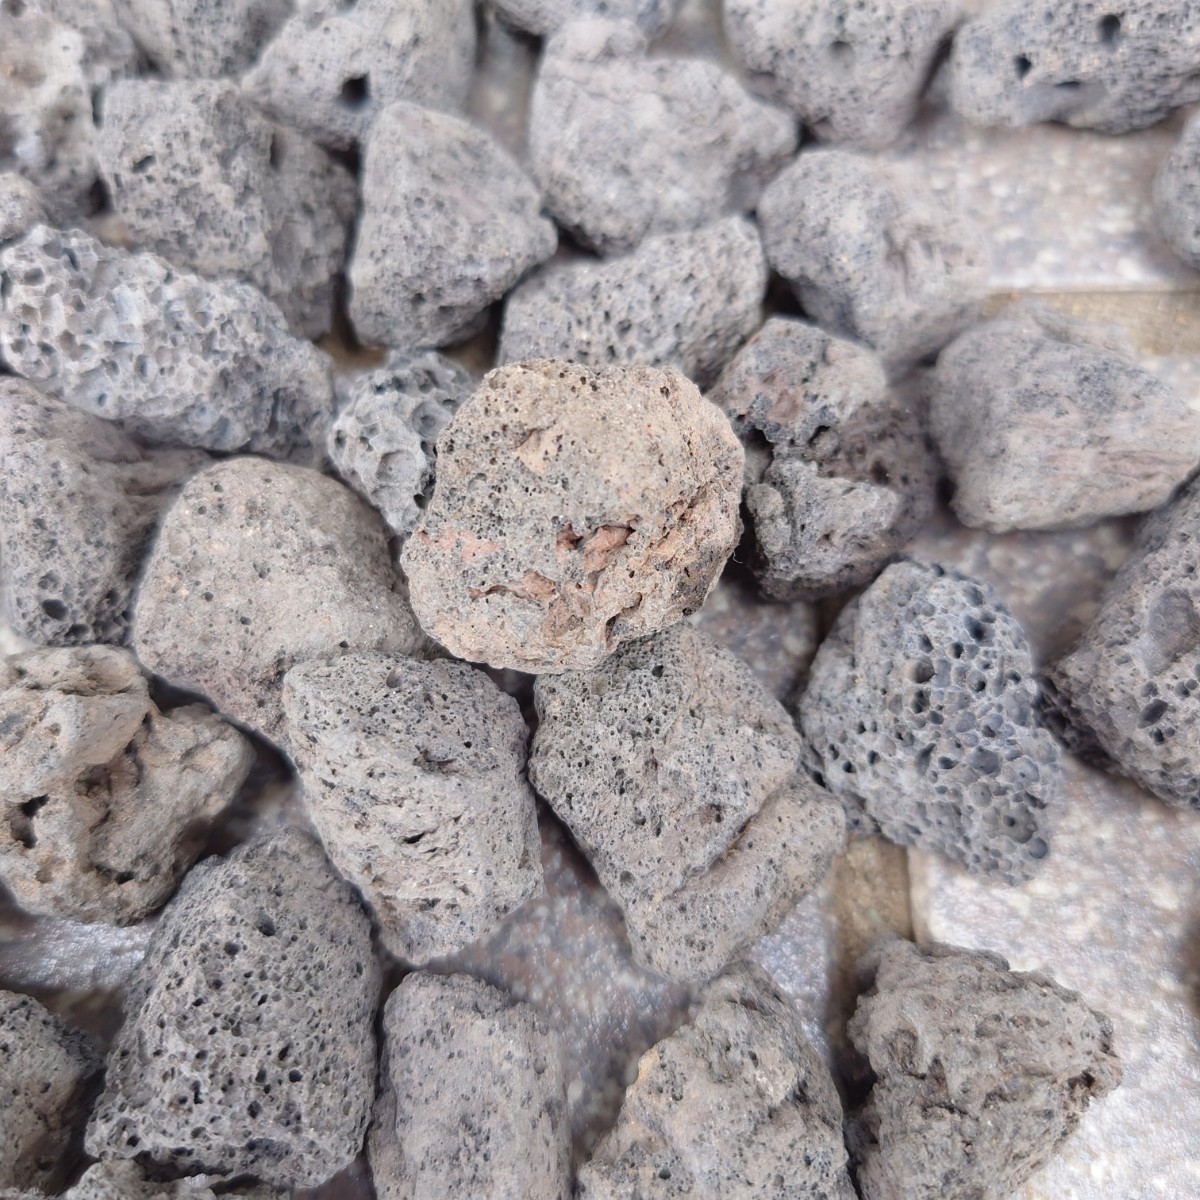 【アウトレット品】黒溶岩石 100個 (1.5〜3cmほどの大きさ)_画像8